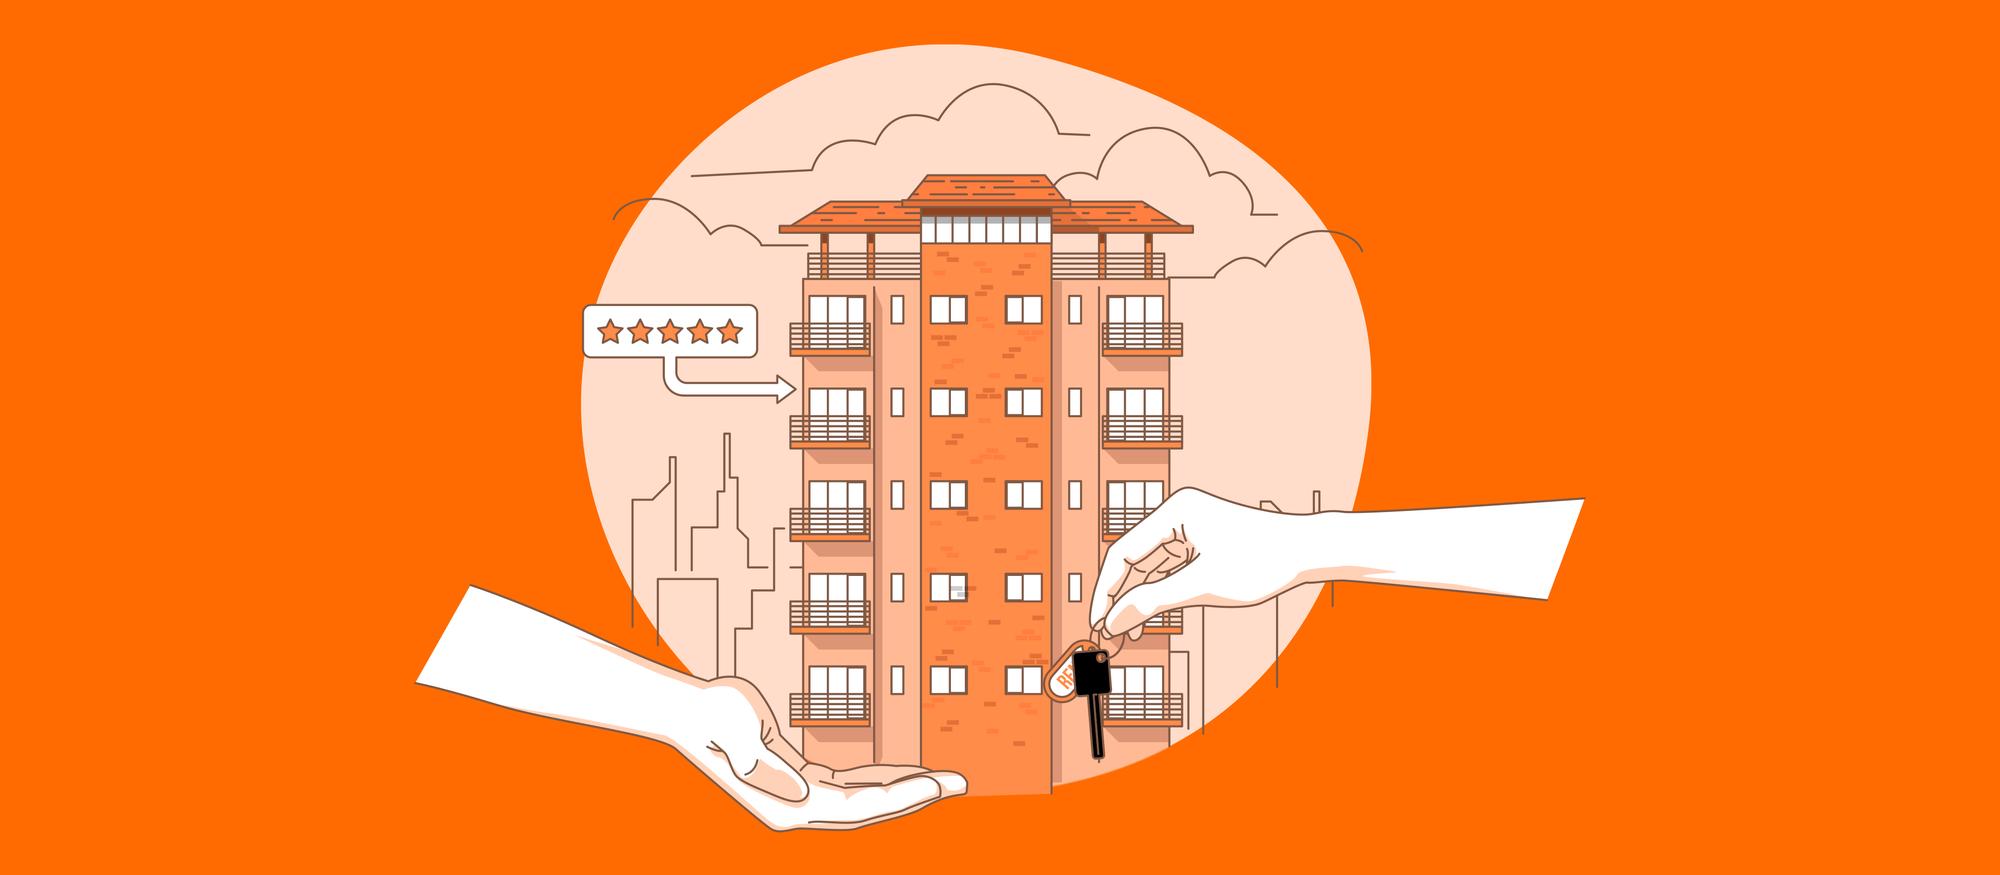 Como fazer um contrato de aluguel por temporada: ilustração de uma mão recebendo chaves de outra mão com um prédio ao fundo ondem um apartamente é destacado com 5 estrelas